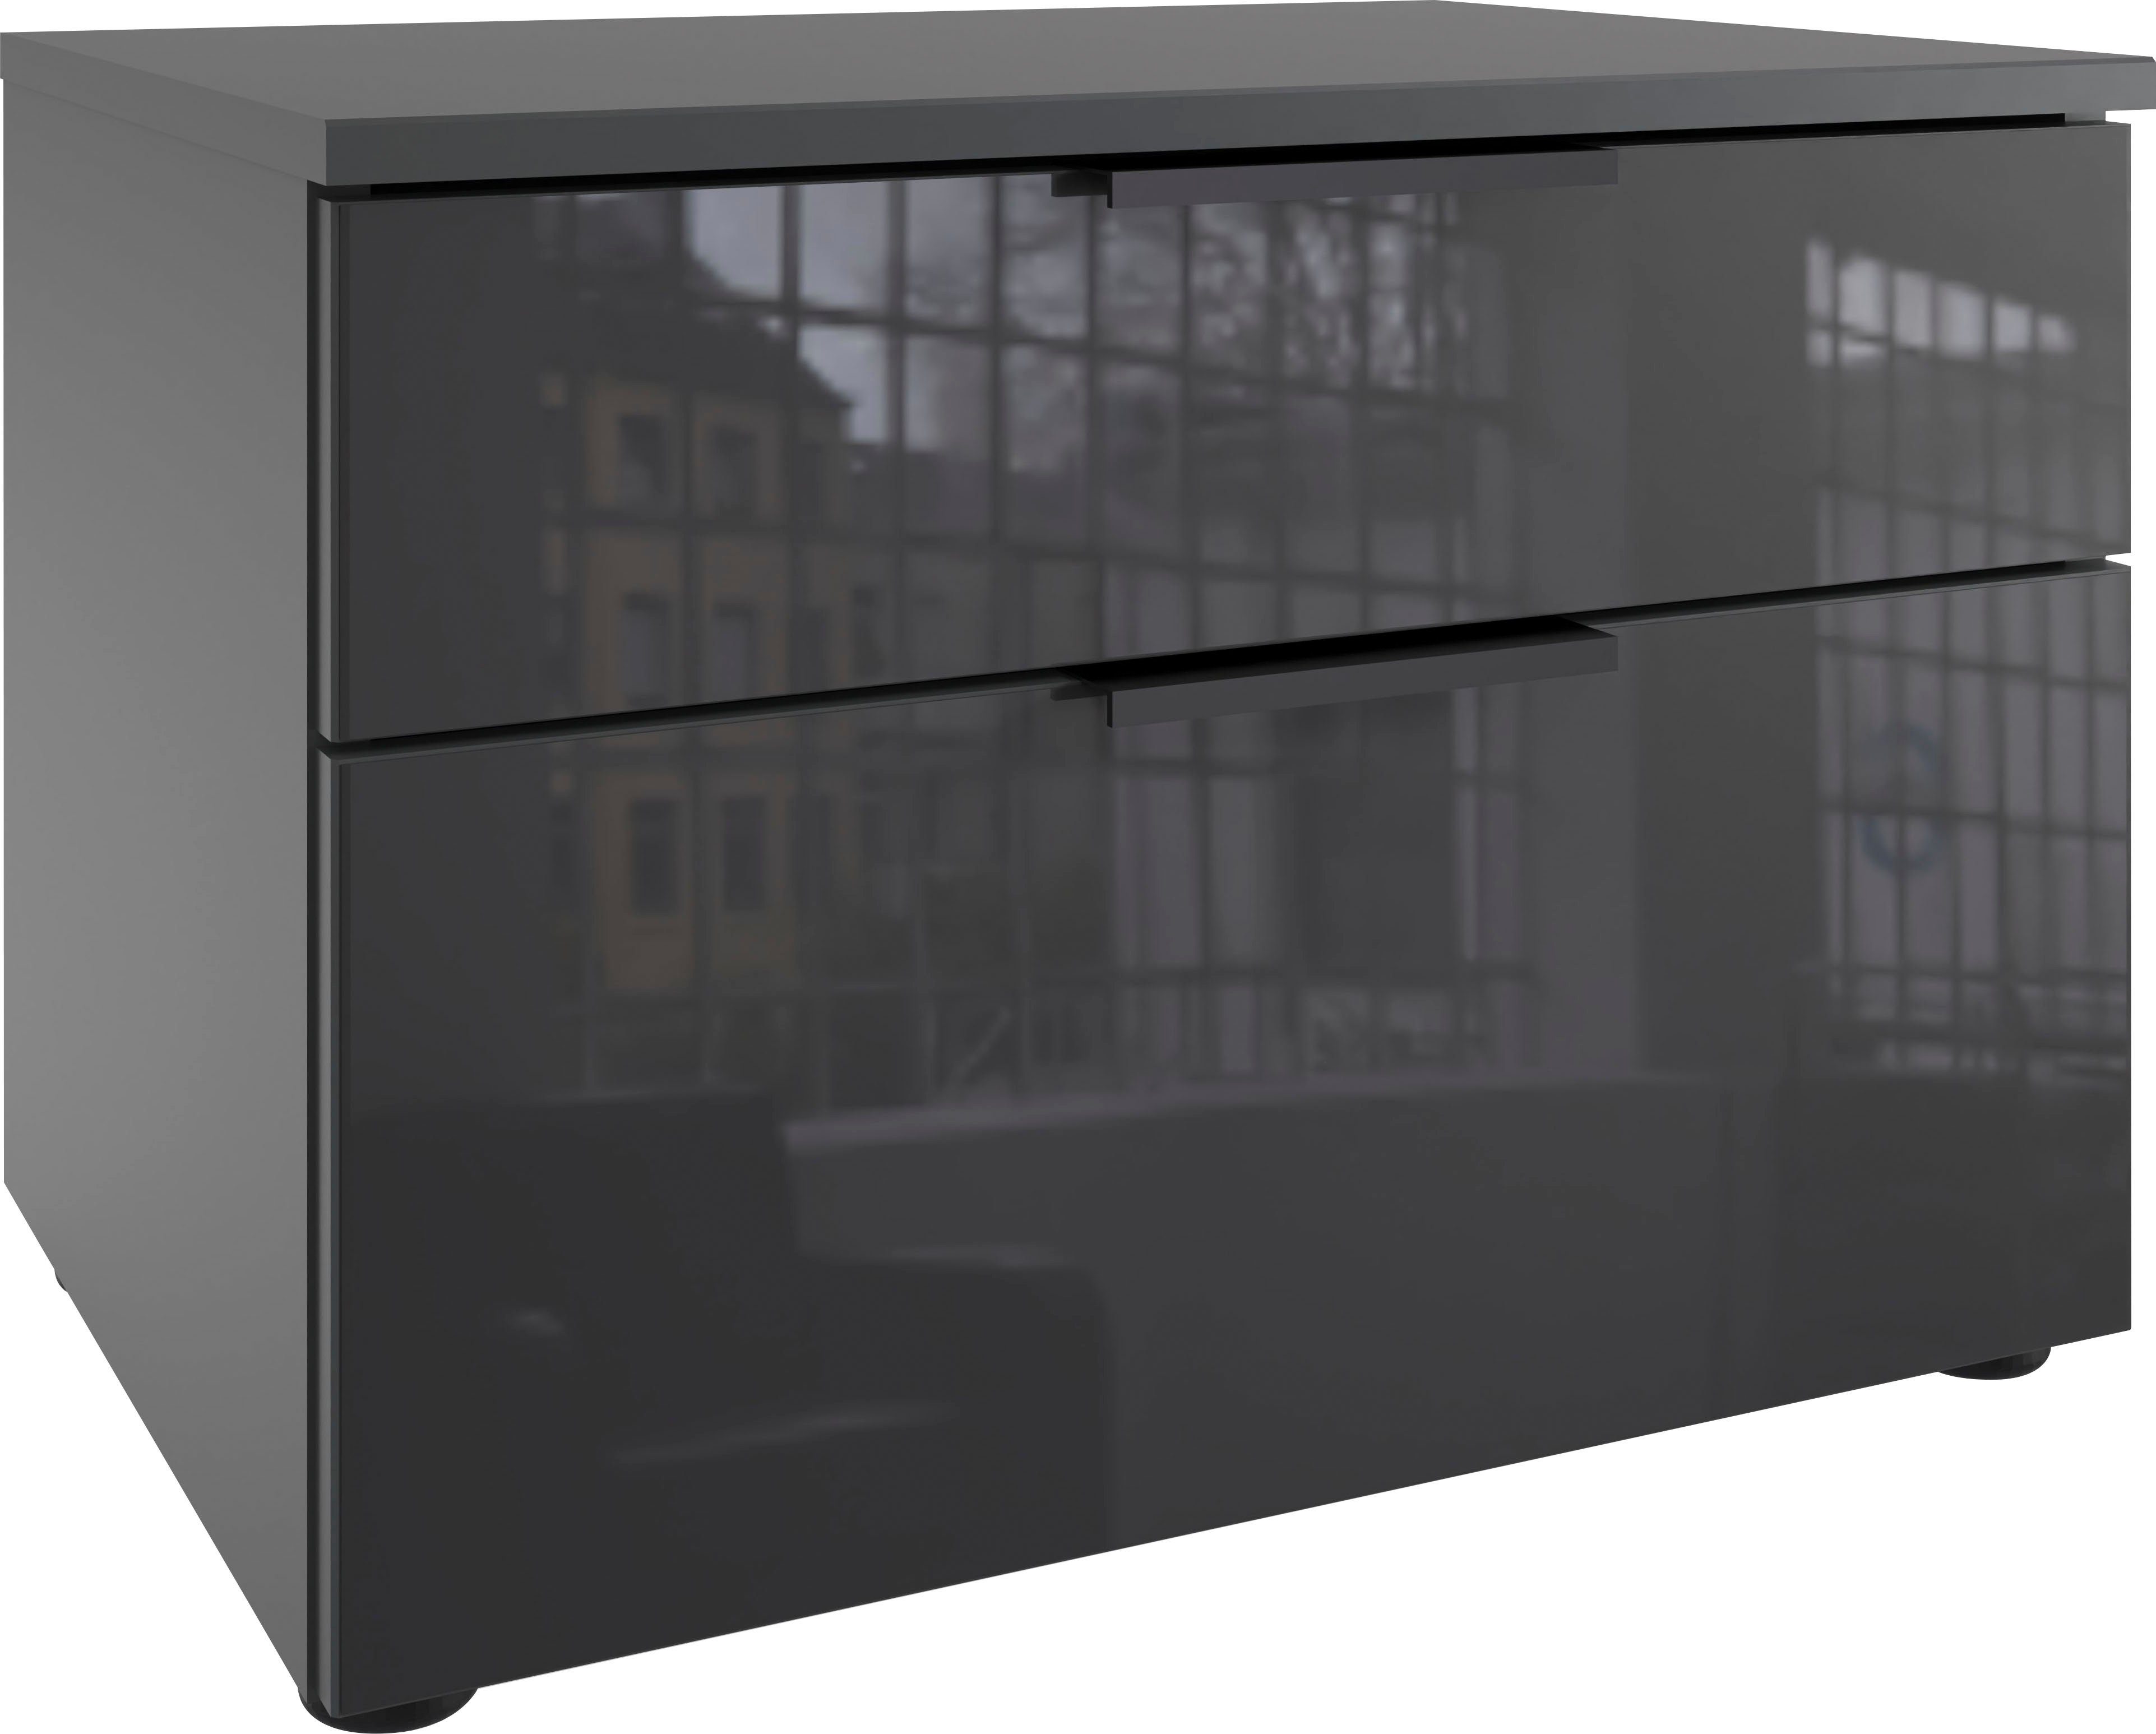 wimex nachtkastje level36 black c by fresh to go met glazen elementen aan de voorkant, soft-close functie, 54 cm breed wit